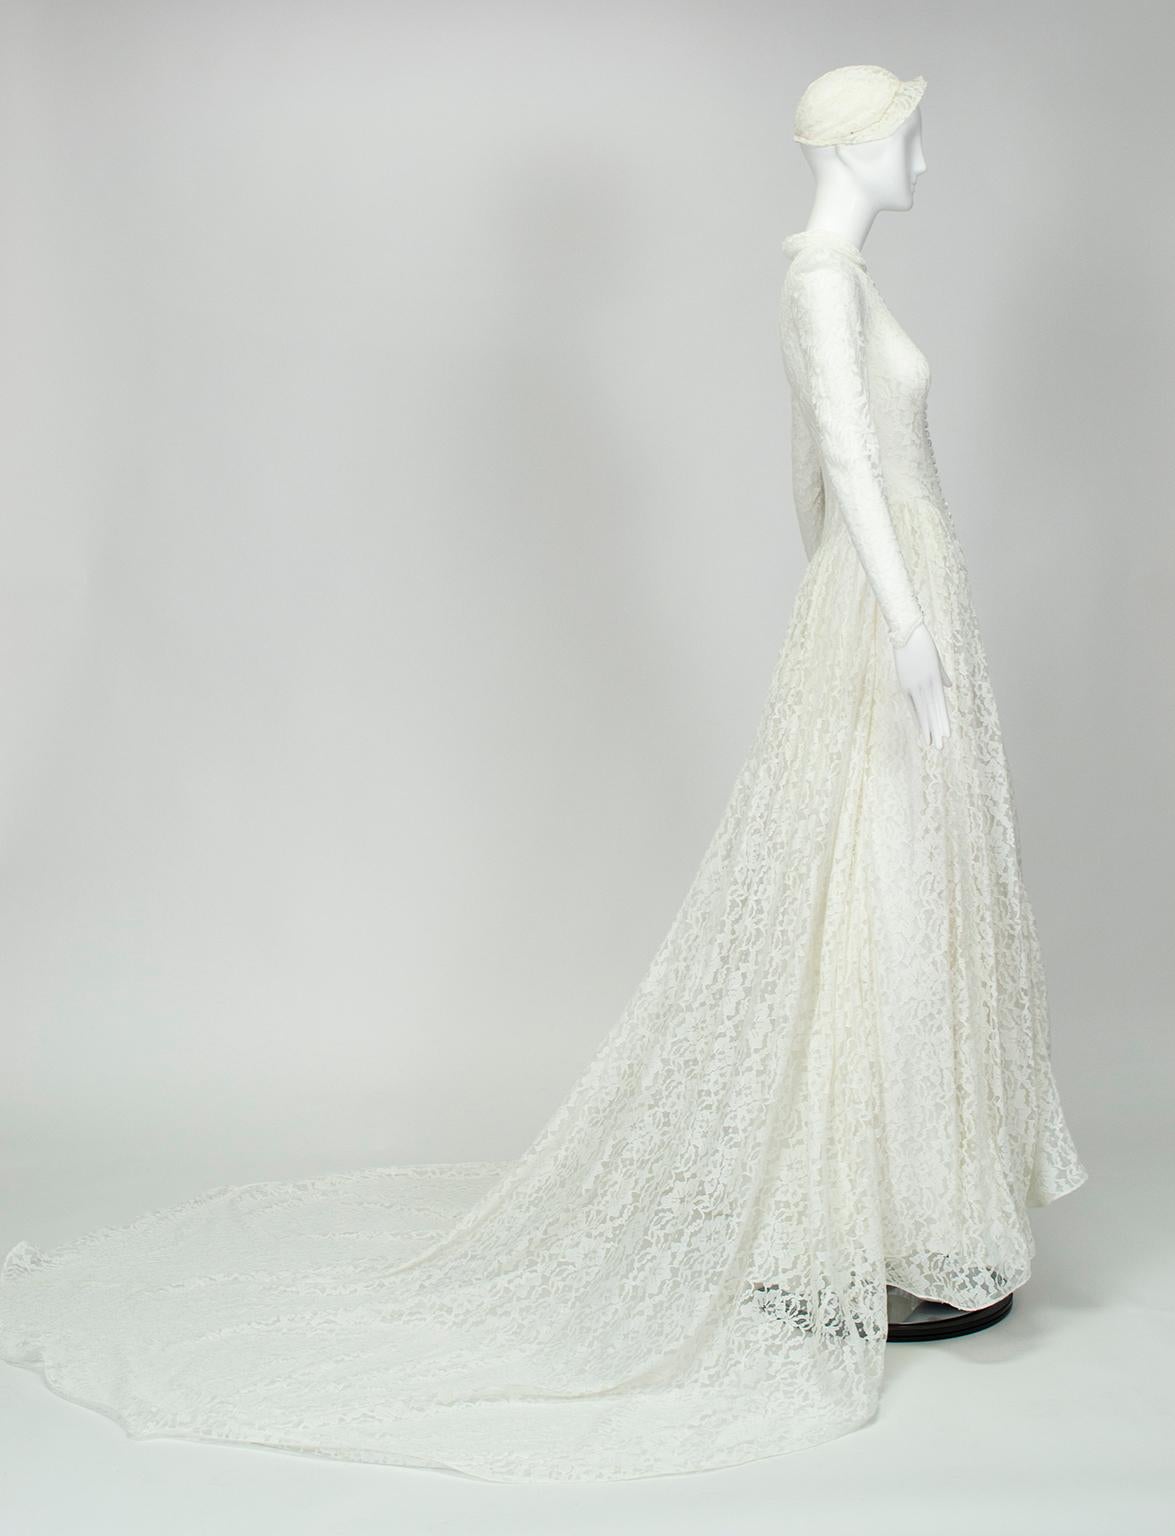 Ein verführerisches, aber vollständig bedecktes Kleid für Bräute, die Bescheidenheit suchen, ohne mausgrau zu wirken. Dieses Hochzeitskleid wurde für eine Braut aus dem Jahr 1951 maßgefertigt, die Diskretion und Schönheit gleichermaßen schätzte.